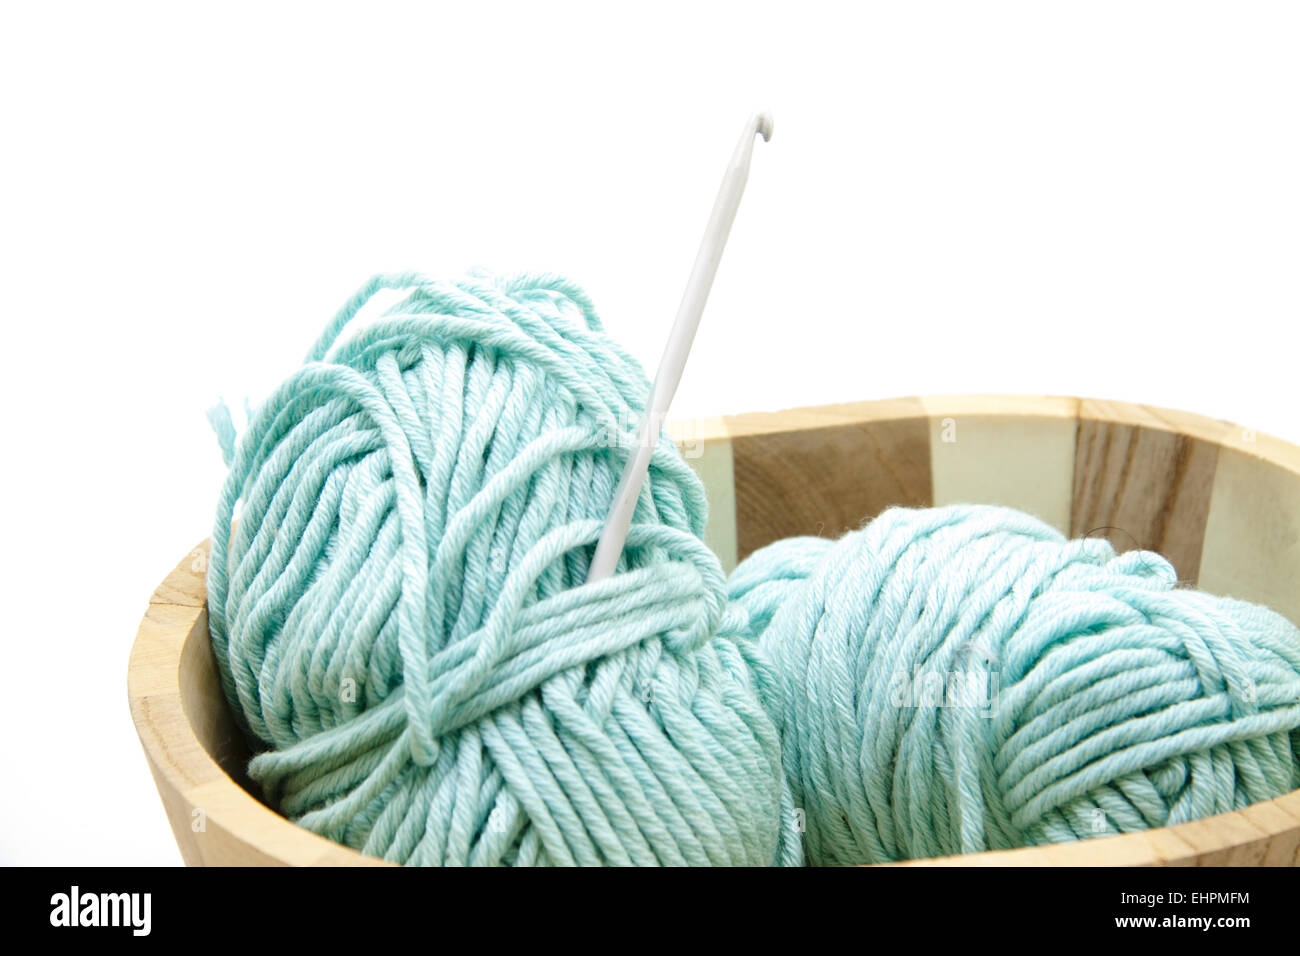 Crochet wool with crochet needle Stock Photo